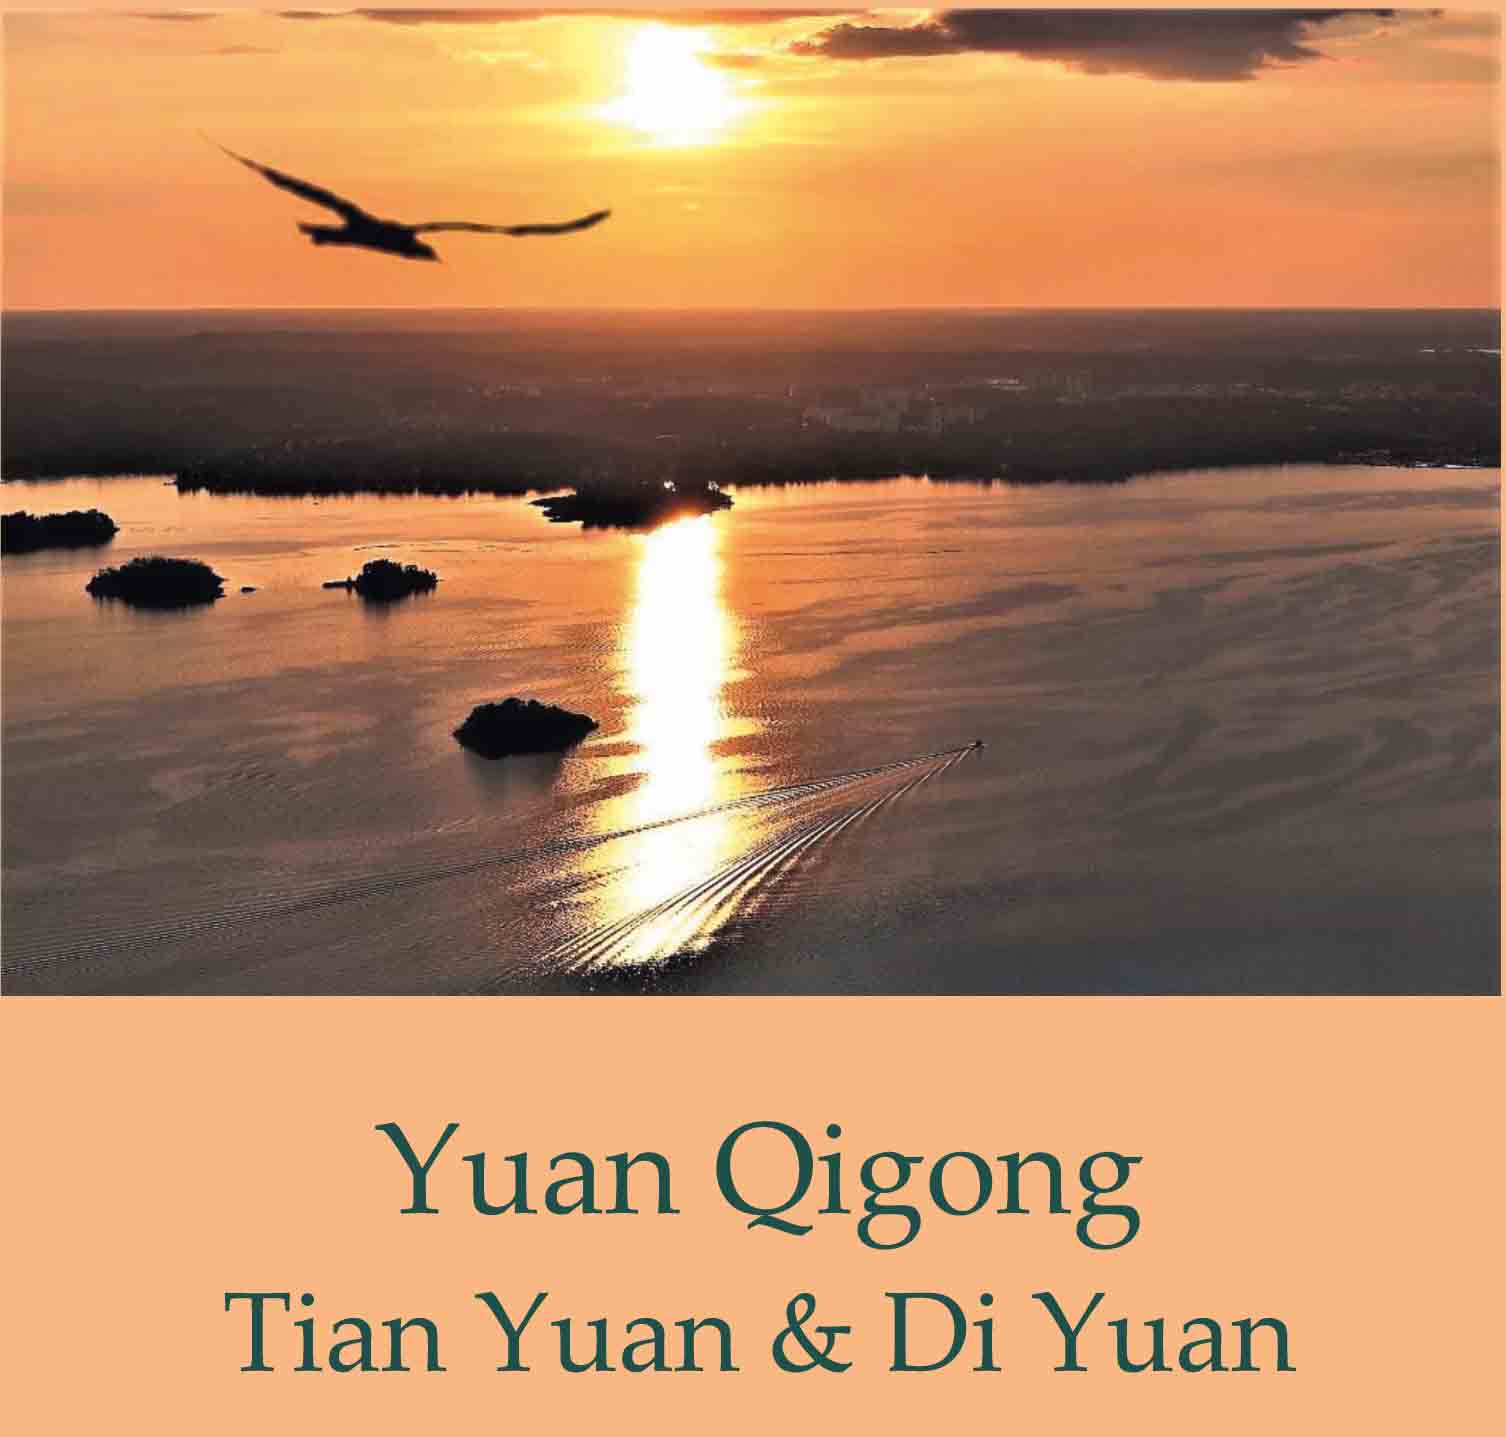 Yuan Qigong Tian Yuan